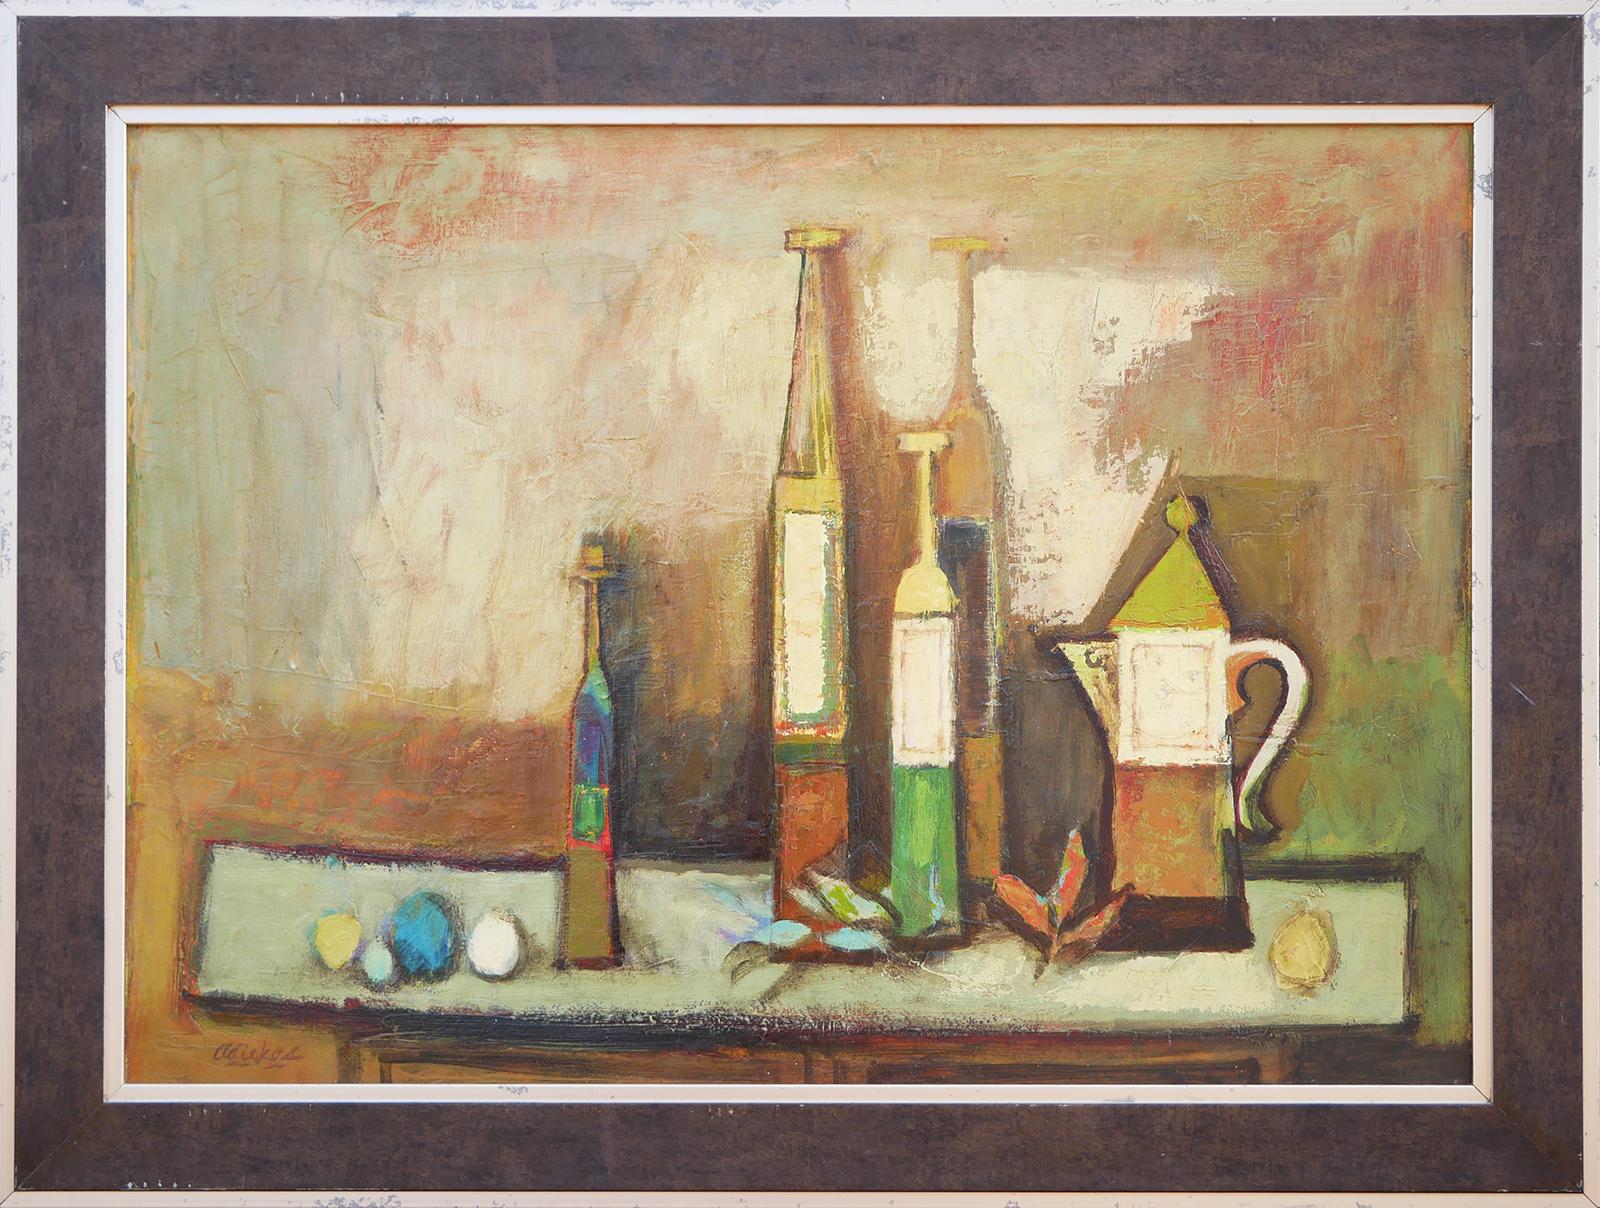 Modernes abstraktes Stillleben in Braun-, Grün- und Gelbtönen des Künstlers David Adickes aus Houston, TX. Das Werk zeigt eine zentrale Anordnung von Flaschen und einer Kaffeekanne vor einem neutralen Hintergrund. Derzeit hängt ein komplementärer